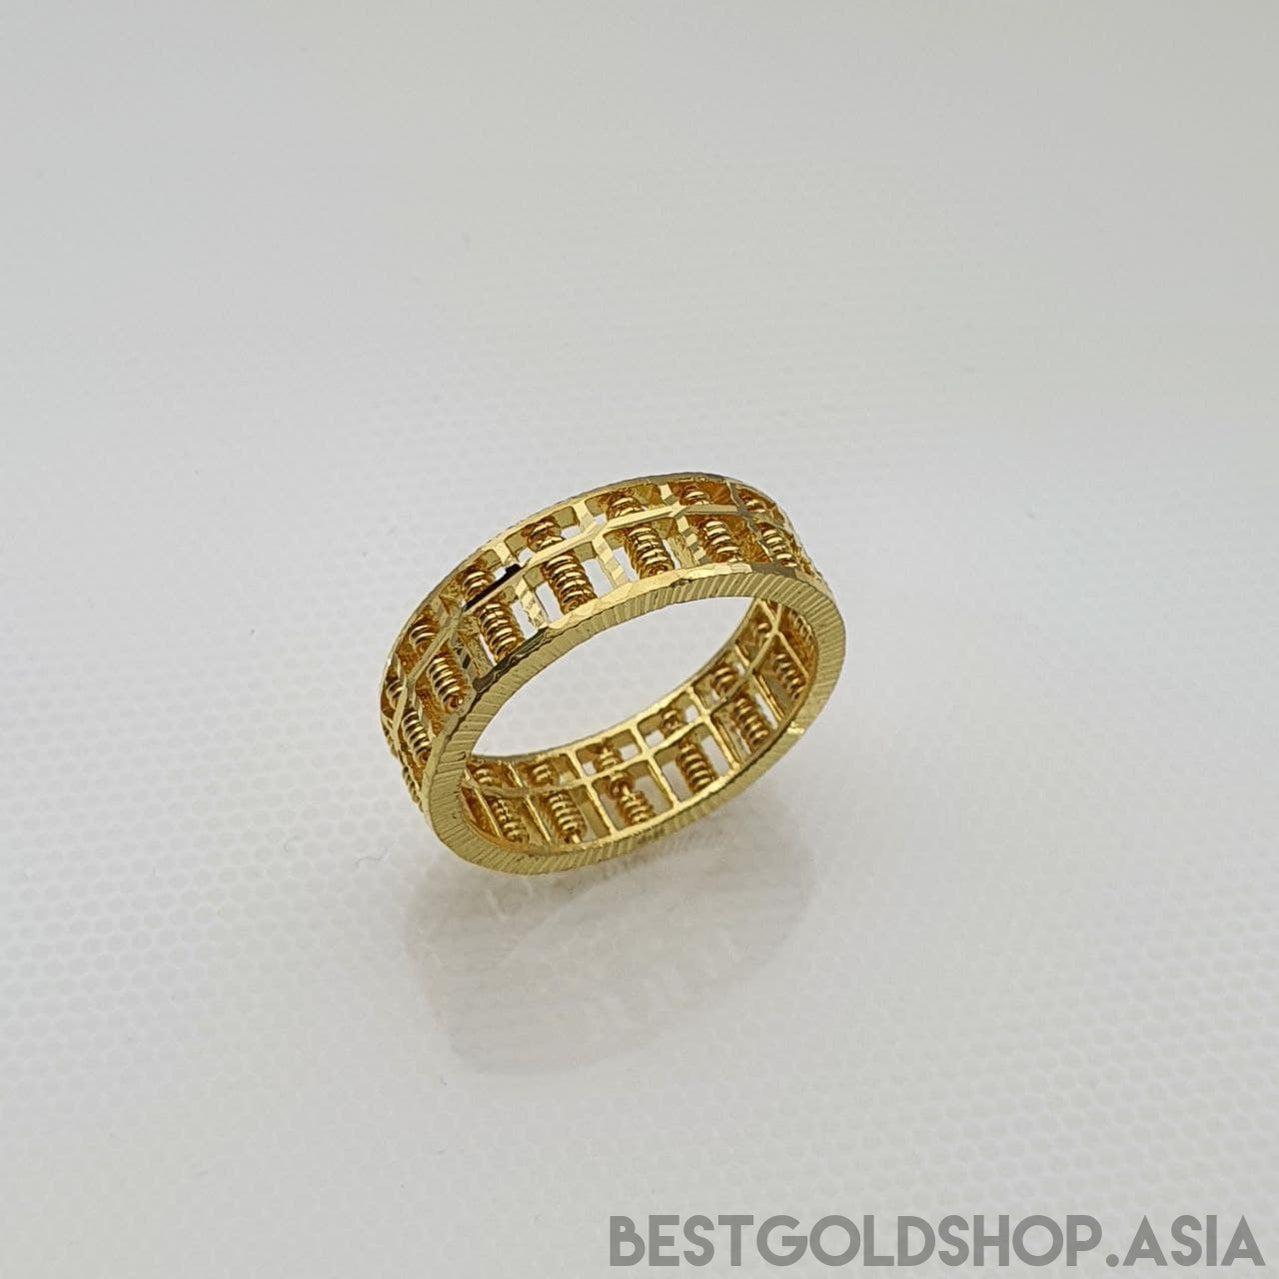 Vasudev Gold - Gents ring light weight#92Shivam Gold | Facebook